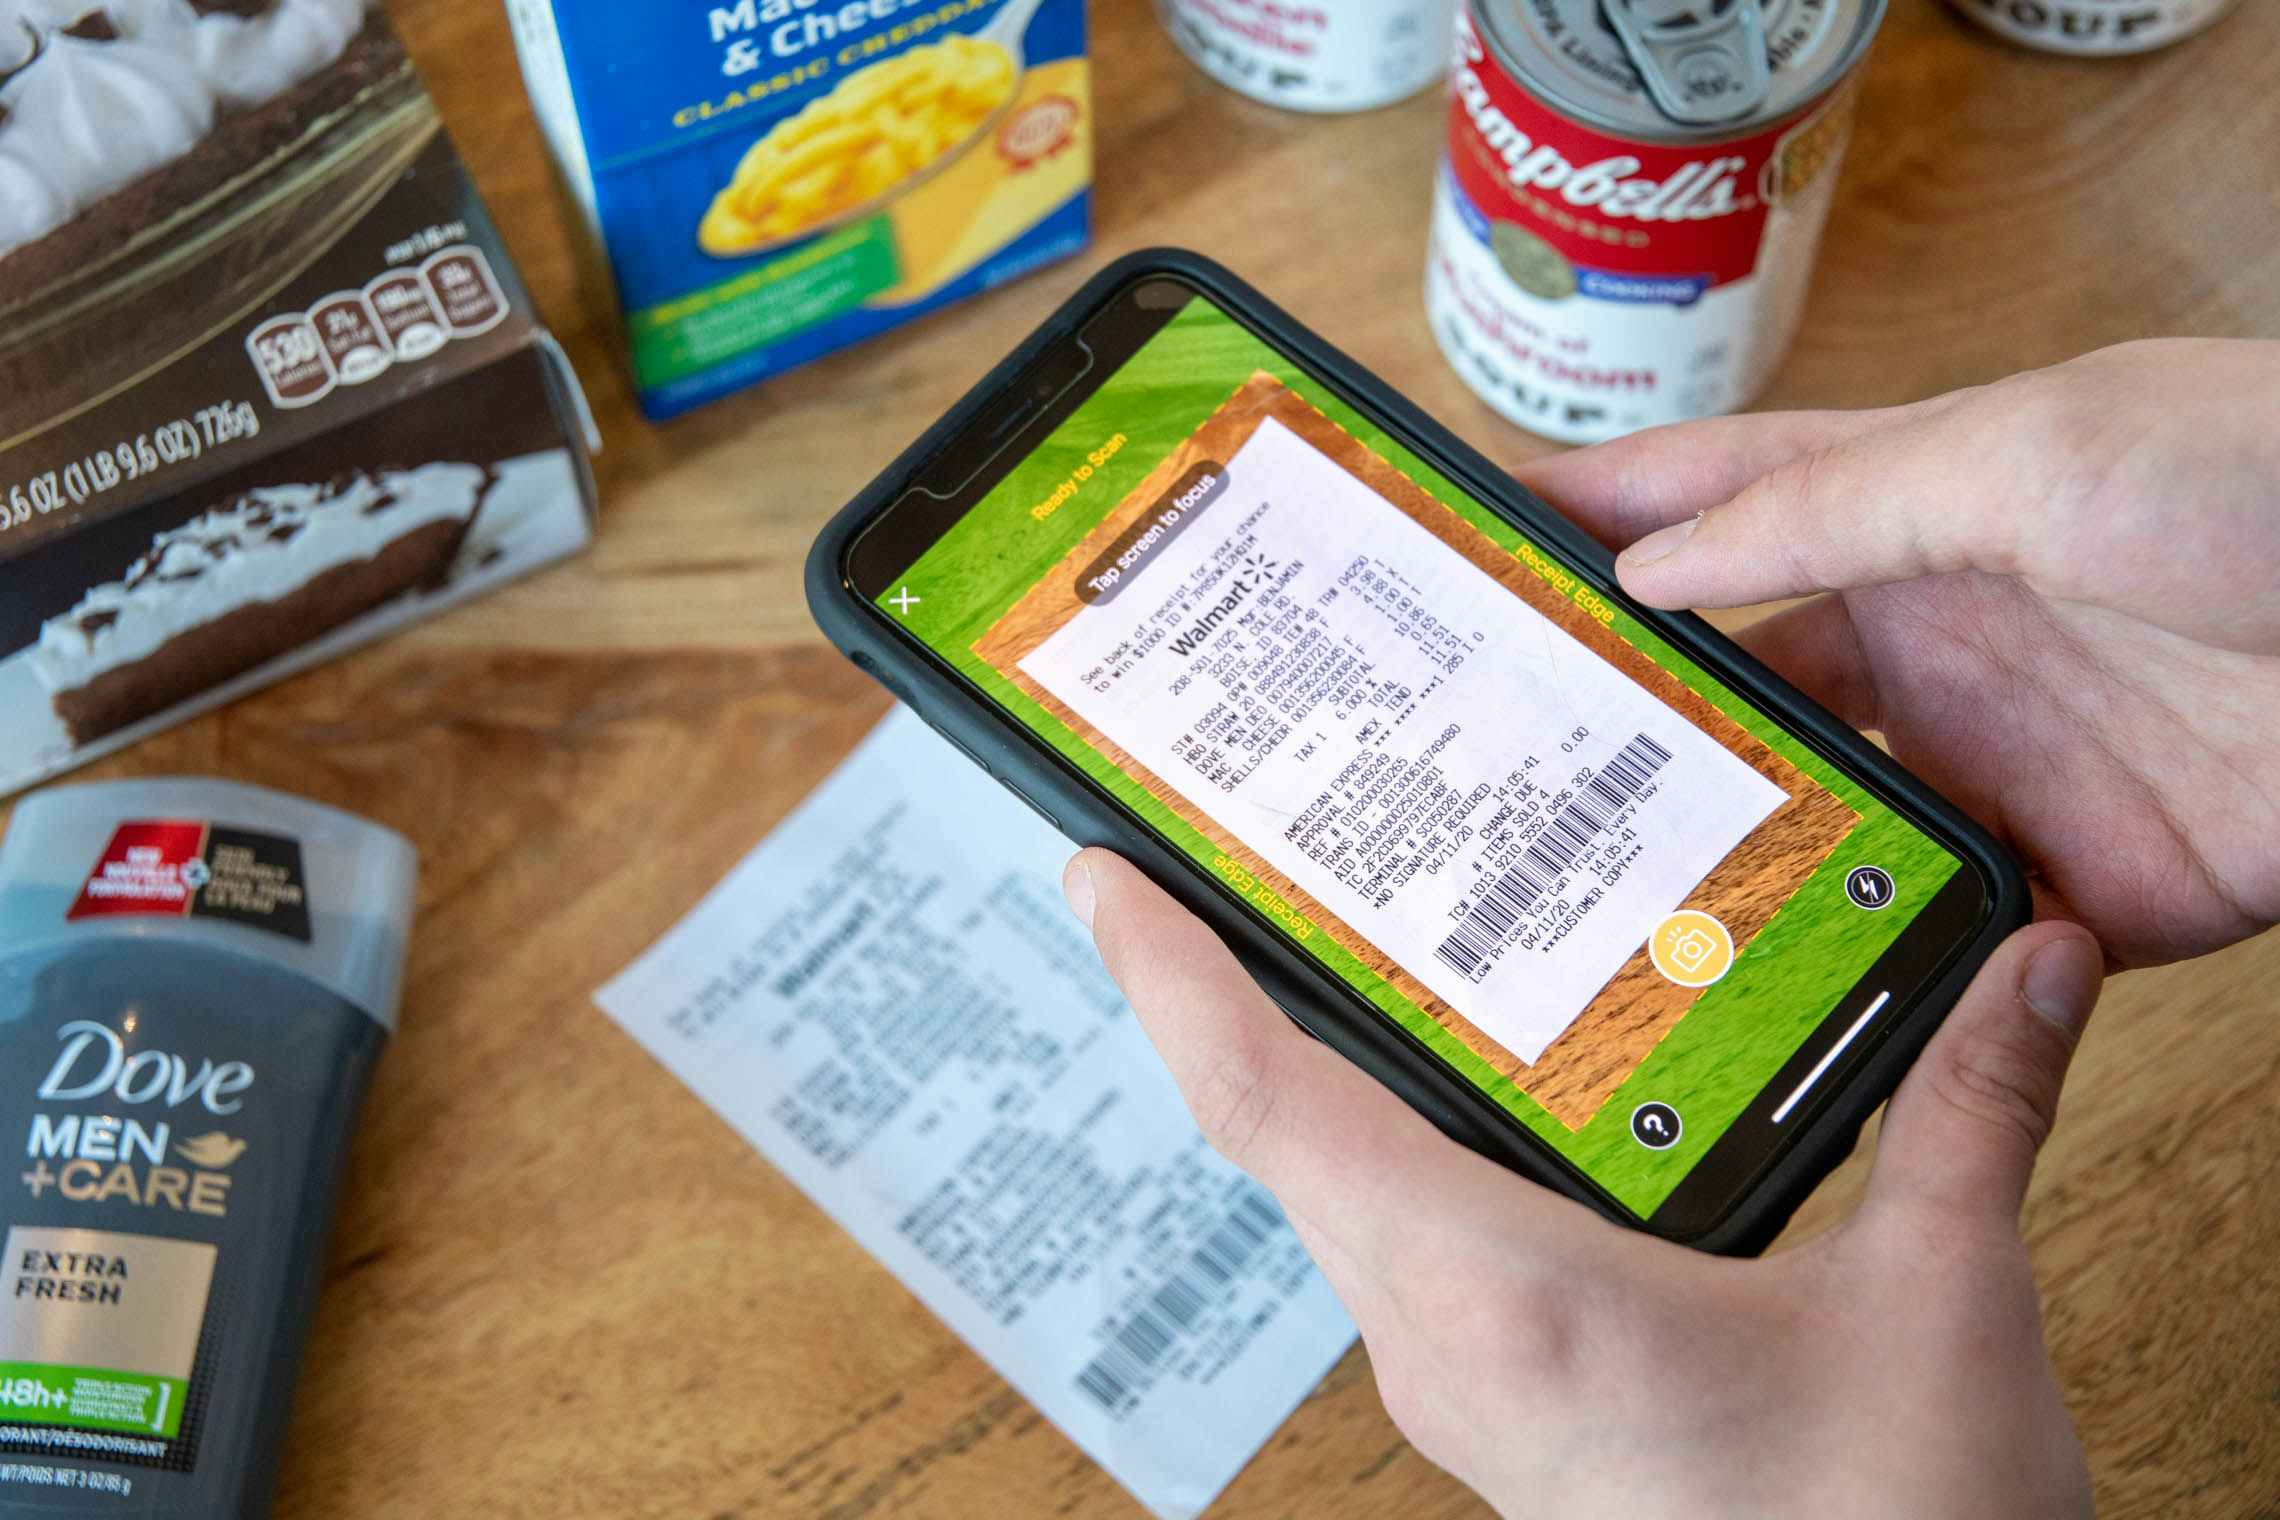 shopper scanning a receipt on their phone using Fetch app